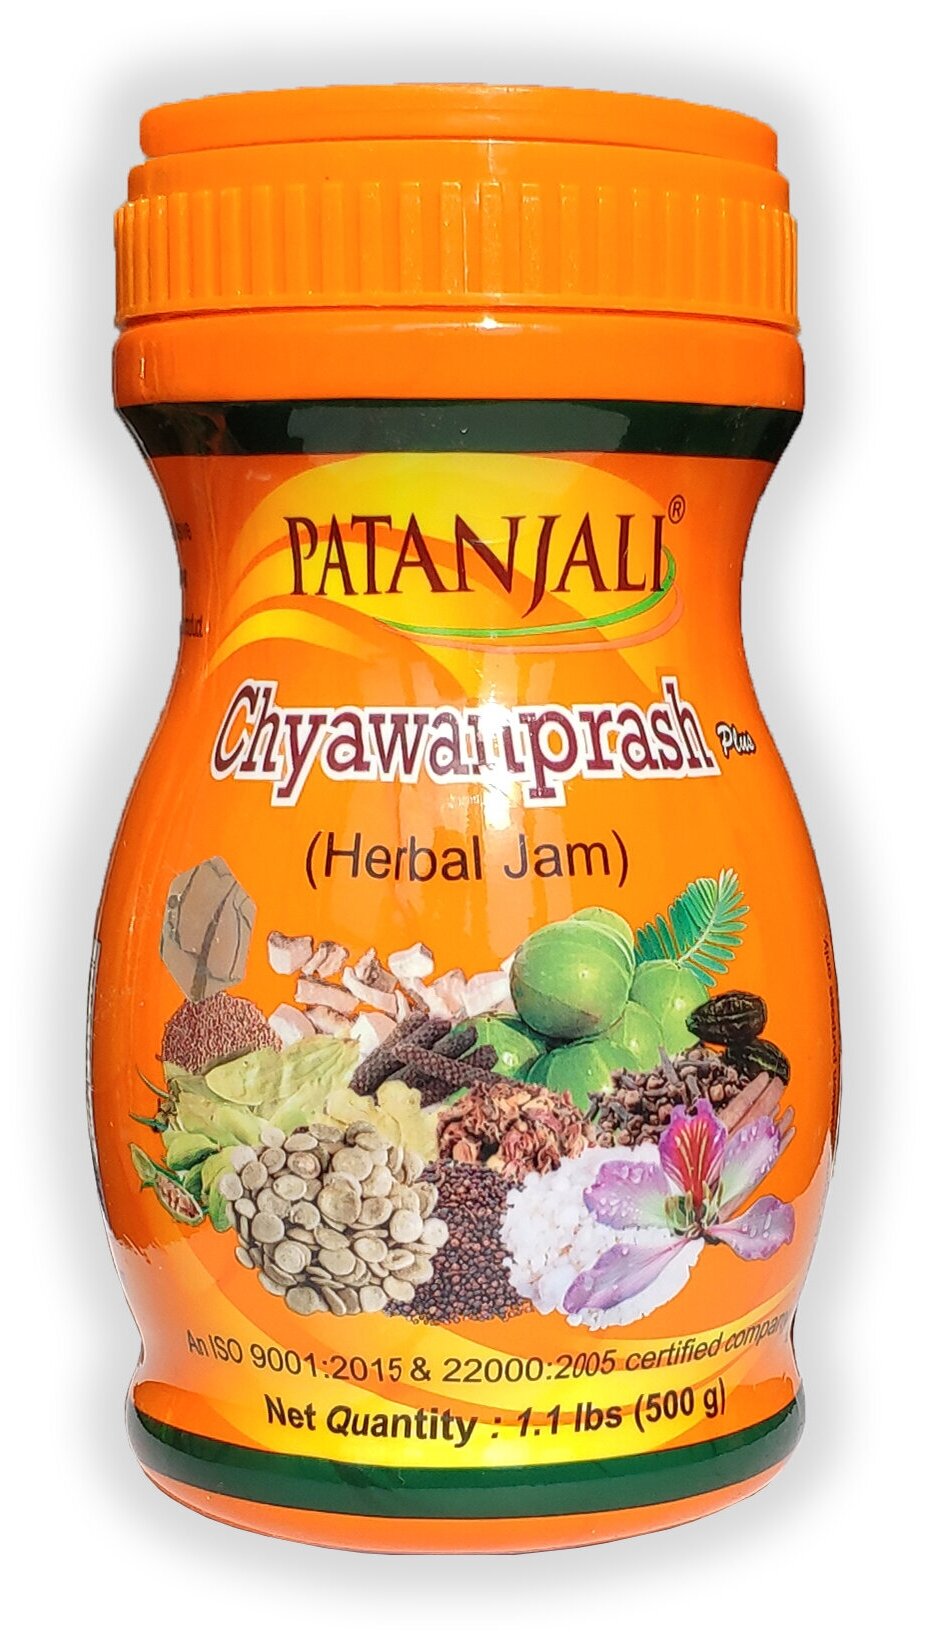 CHYAWANPRASH Plus (Herbal Jam), Patanjali (ЧАВАНПРАШ Плюс, Патанджали), 500 г.